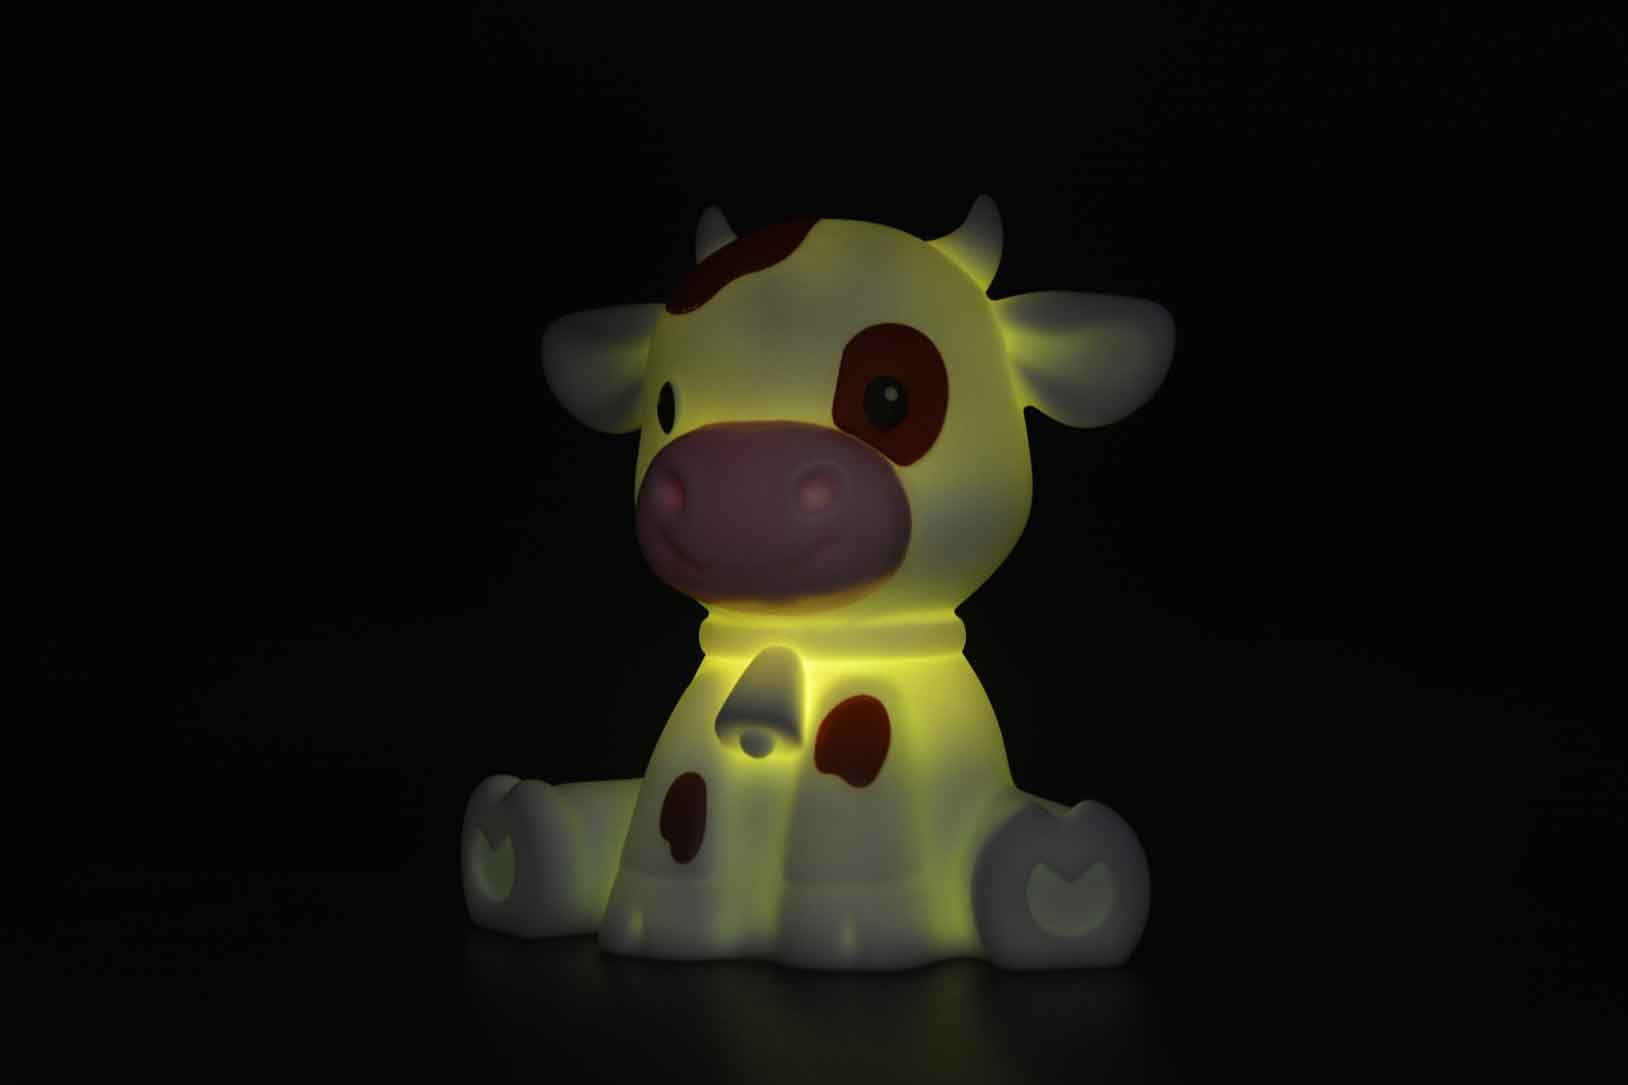 Dhink Zodiac Baby Ox Gece Lambası